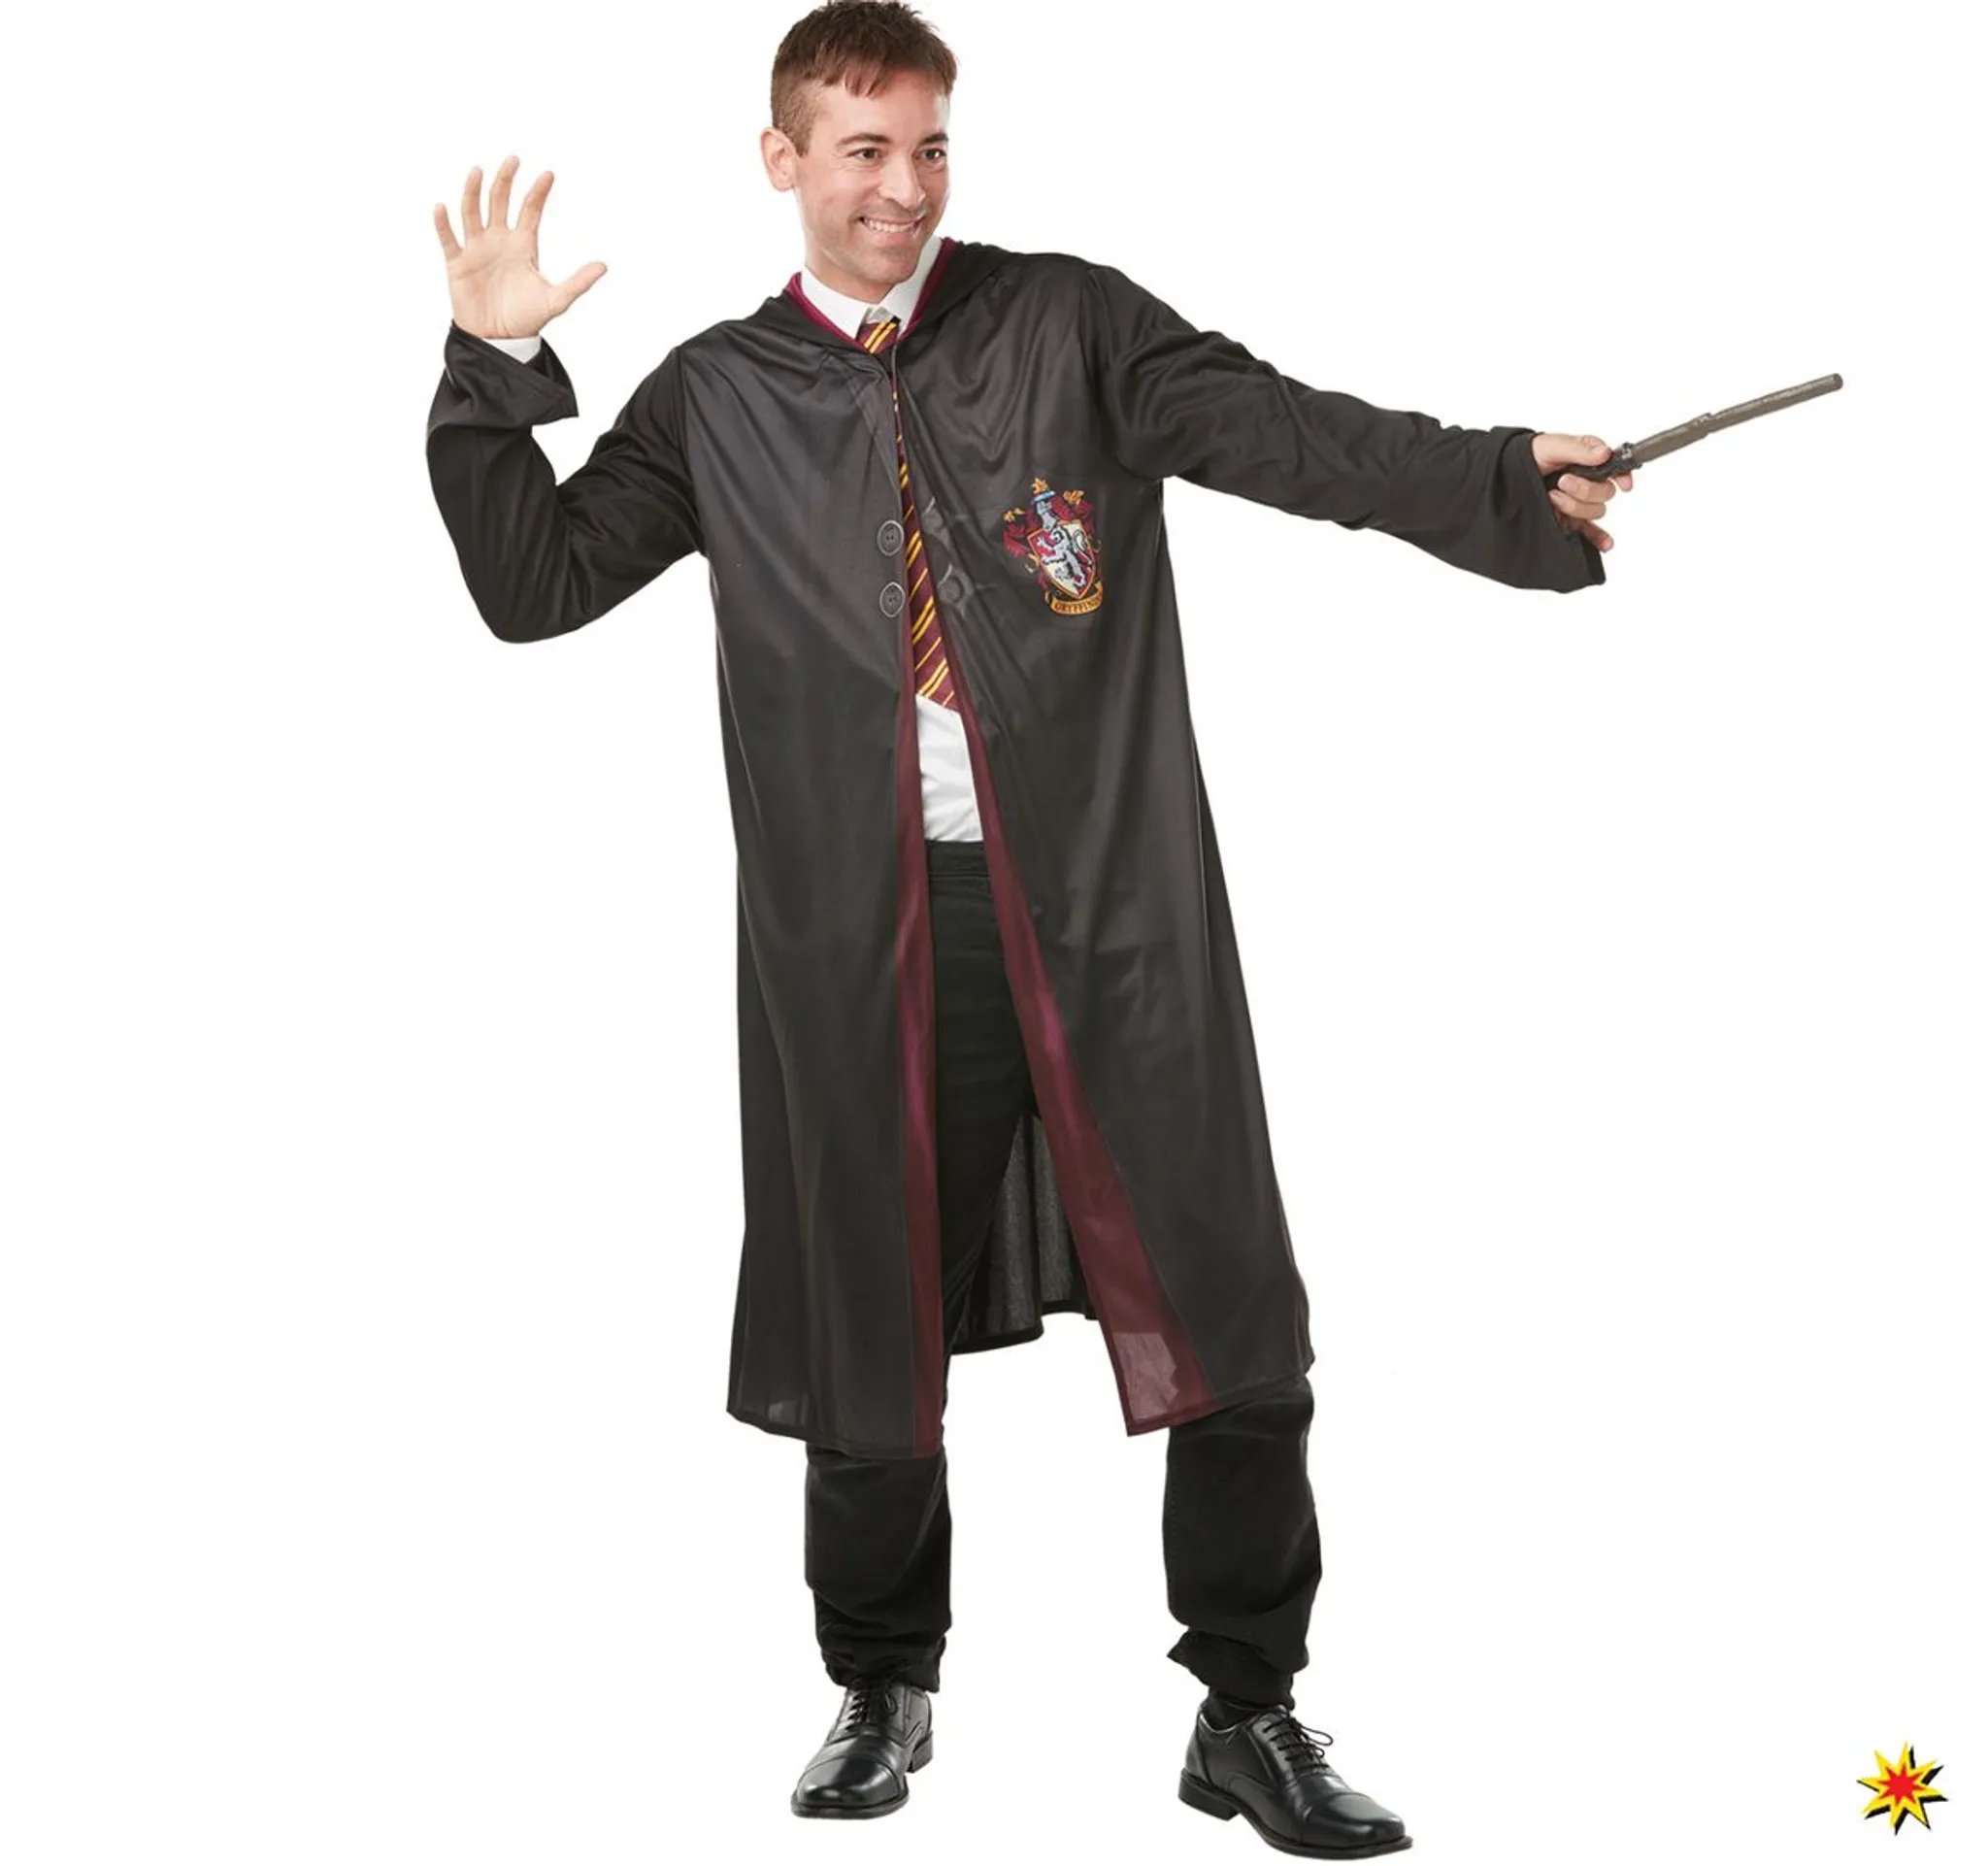 NEU Zauberstab von Harry Potter, inkl. Gryffindor-Abzeichen mit